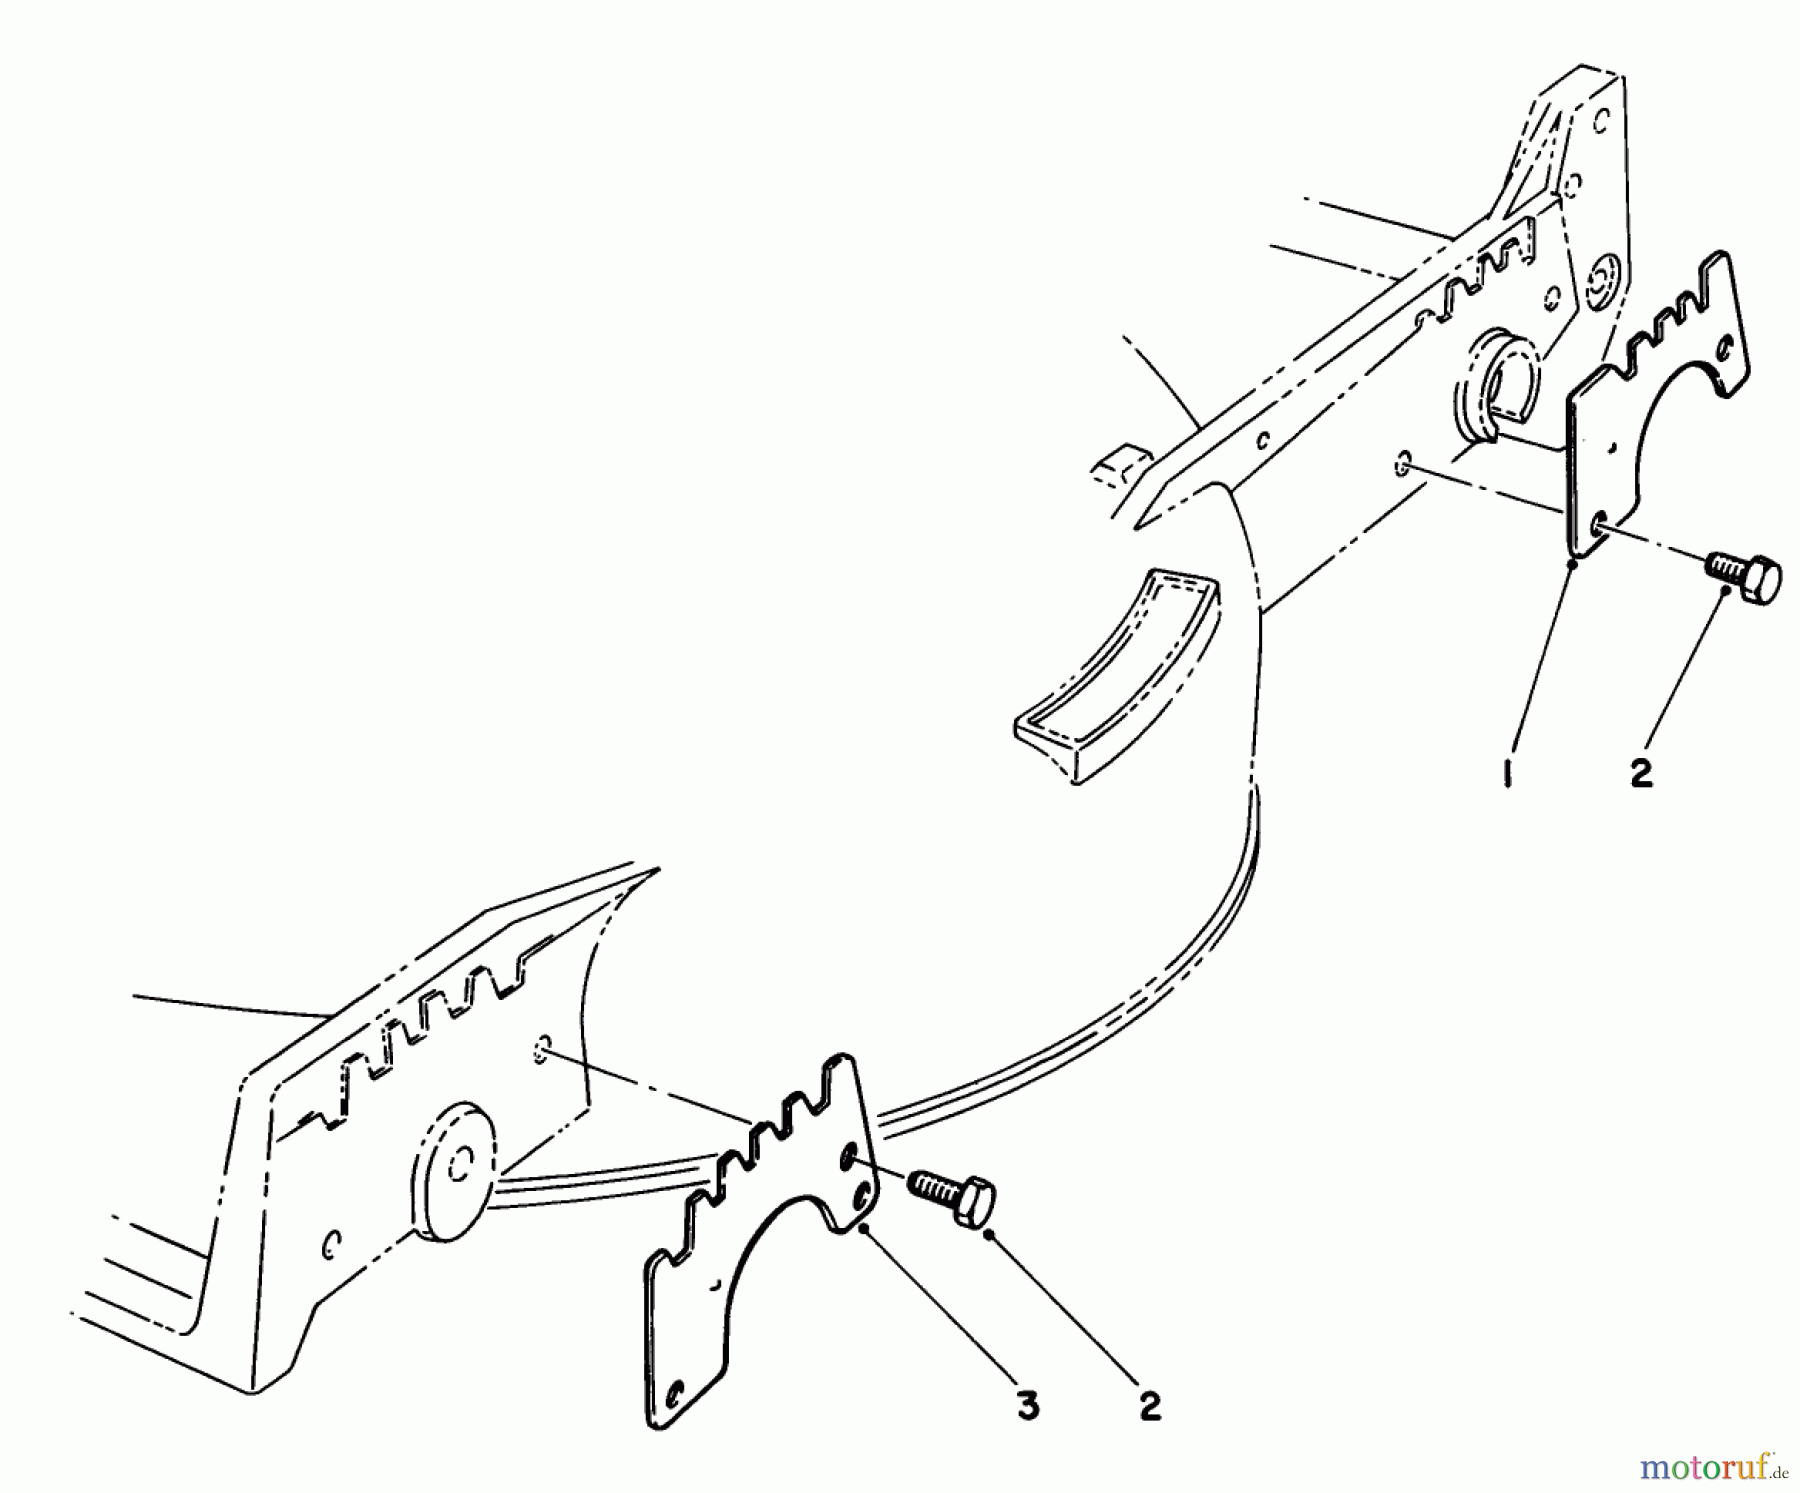  Toro Neu Mowers, Walk-Behind Seite 1 20705 - Toro Lawnmower, 1985 (5000001-5999999) WEAR PLATE KIT NO. 49-4080 (OPTIONAL)